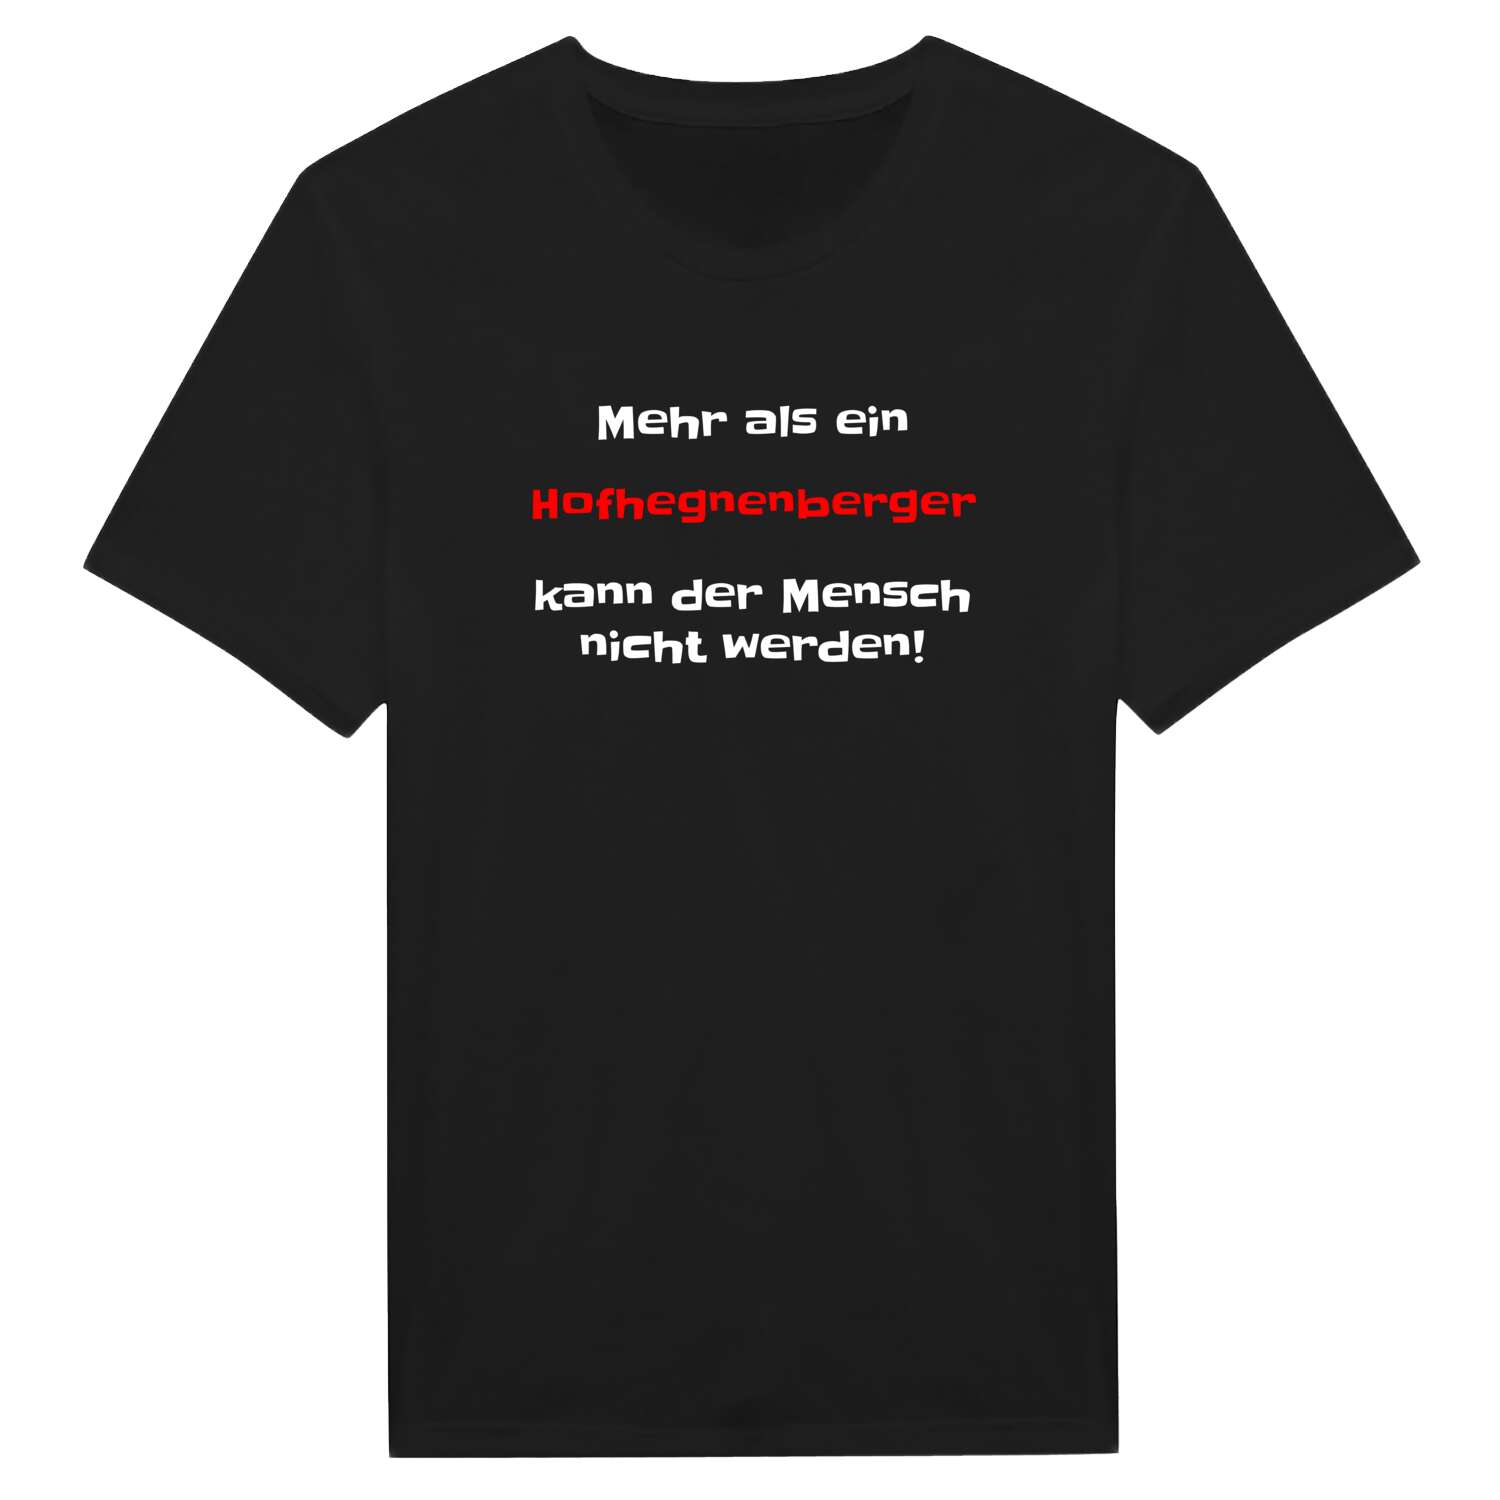 Hofhegnenberg T-Shirt »Mehr als ein«